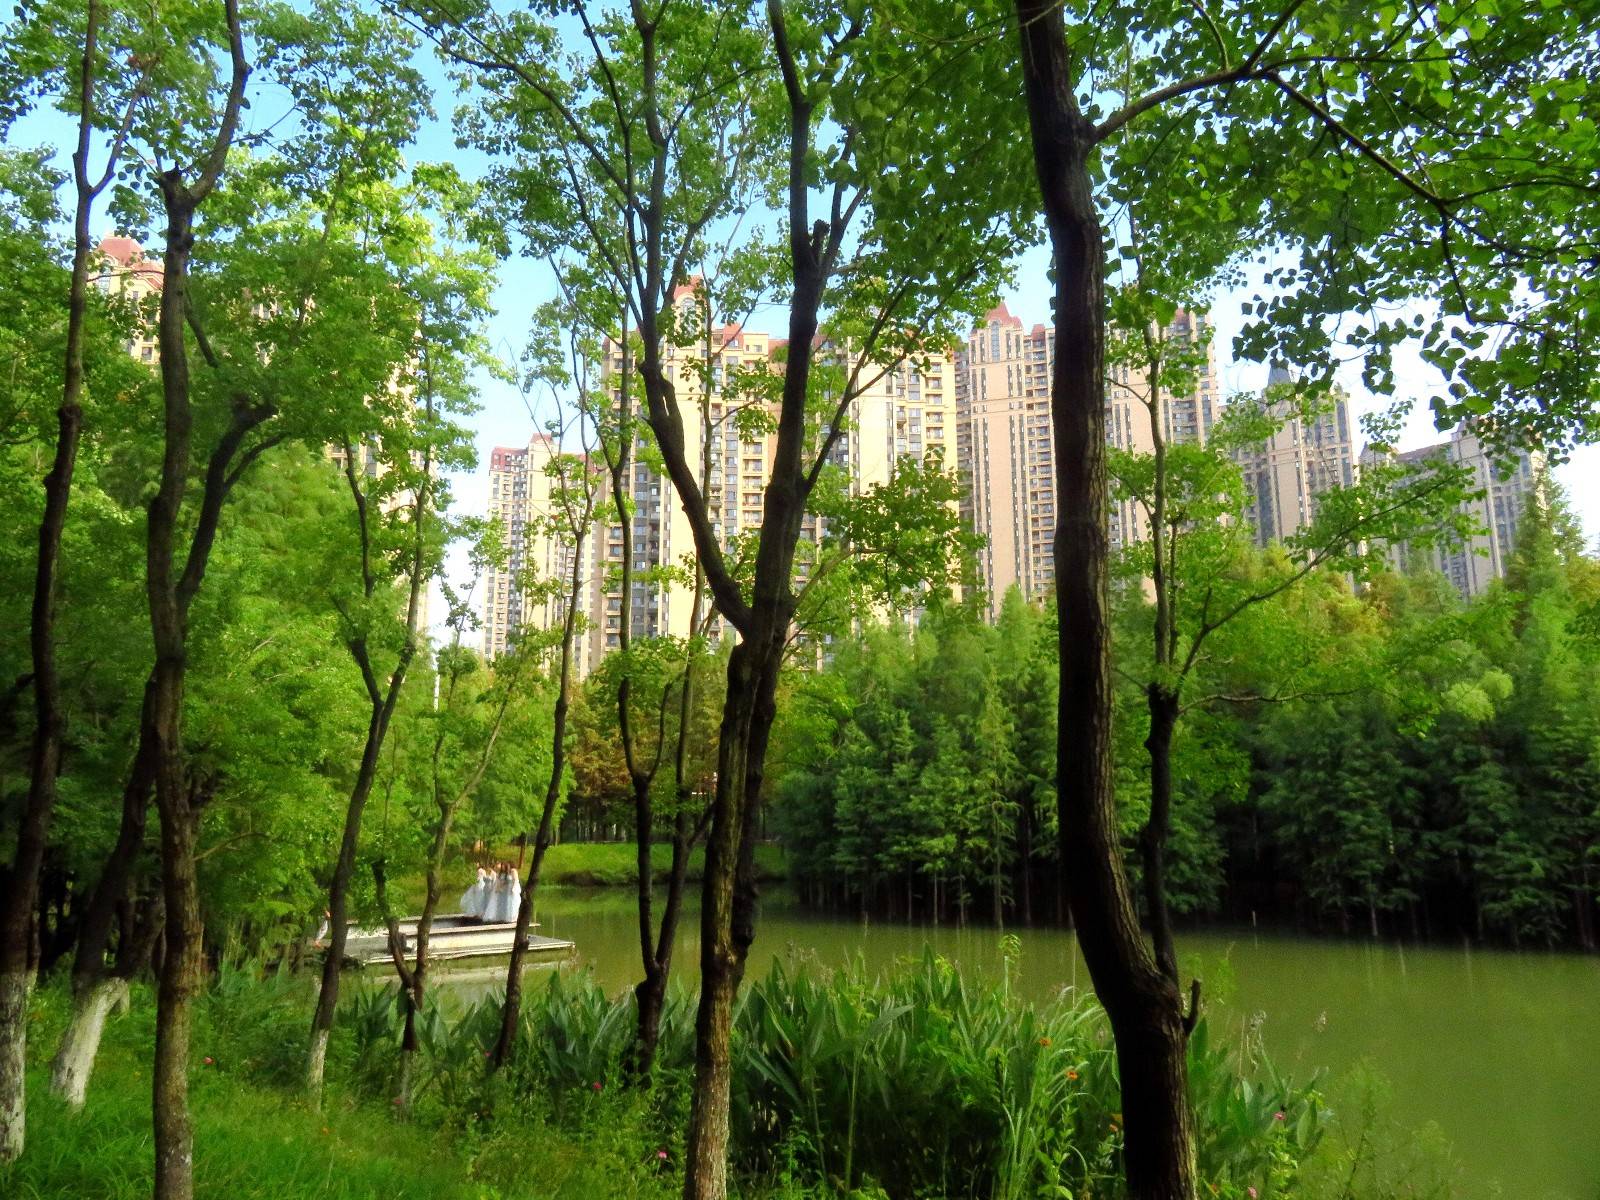 宜昌运河公园秋色渐浓秋景迷人吸引众多市民来观景休闲